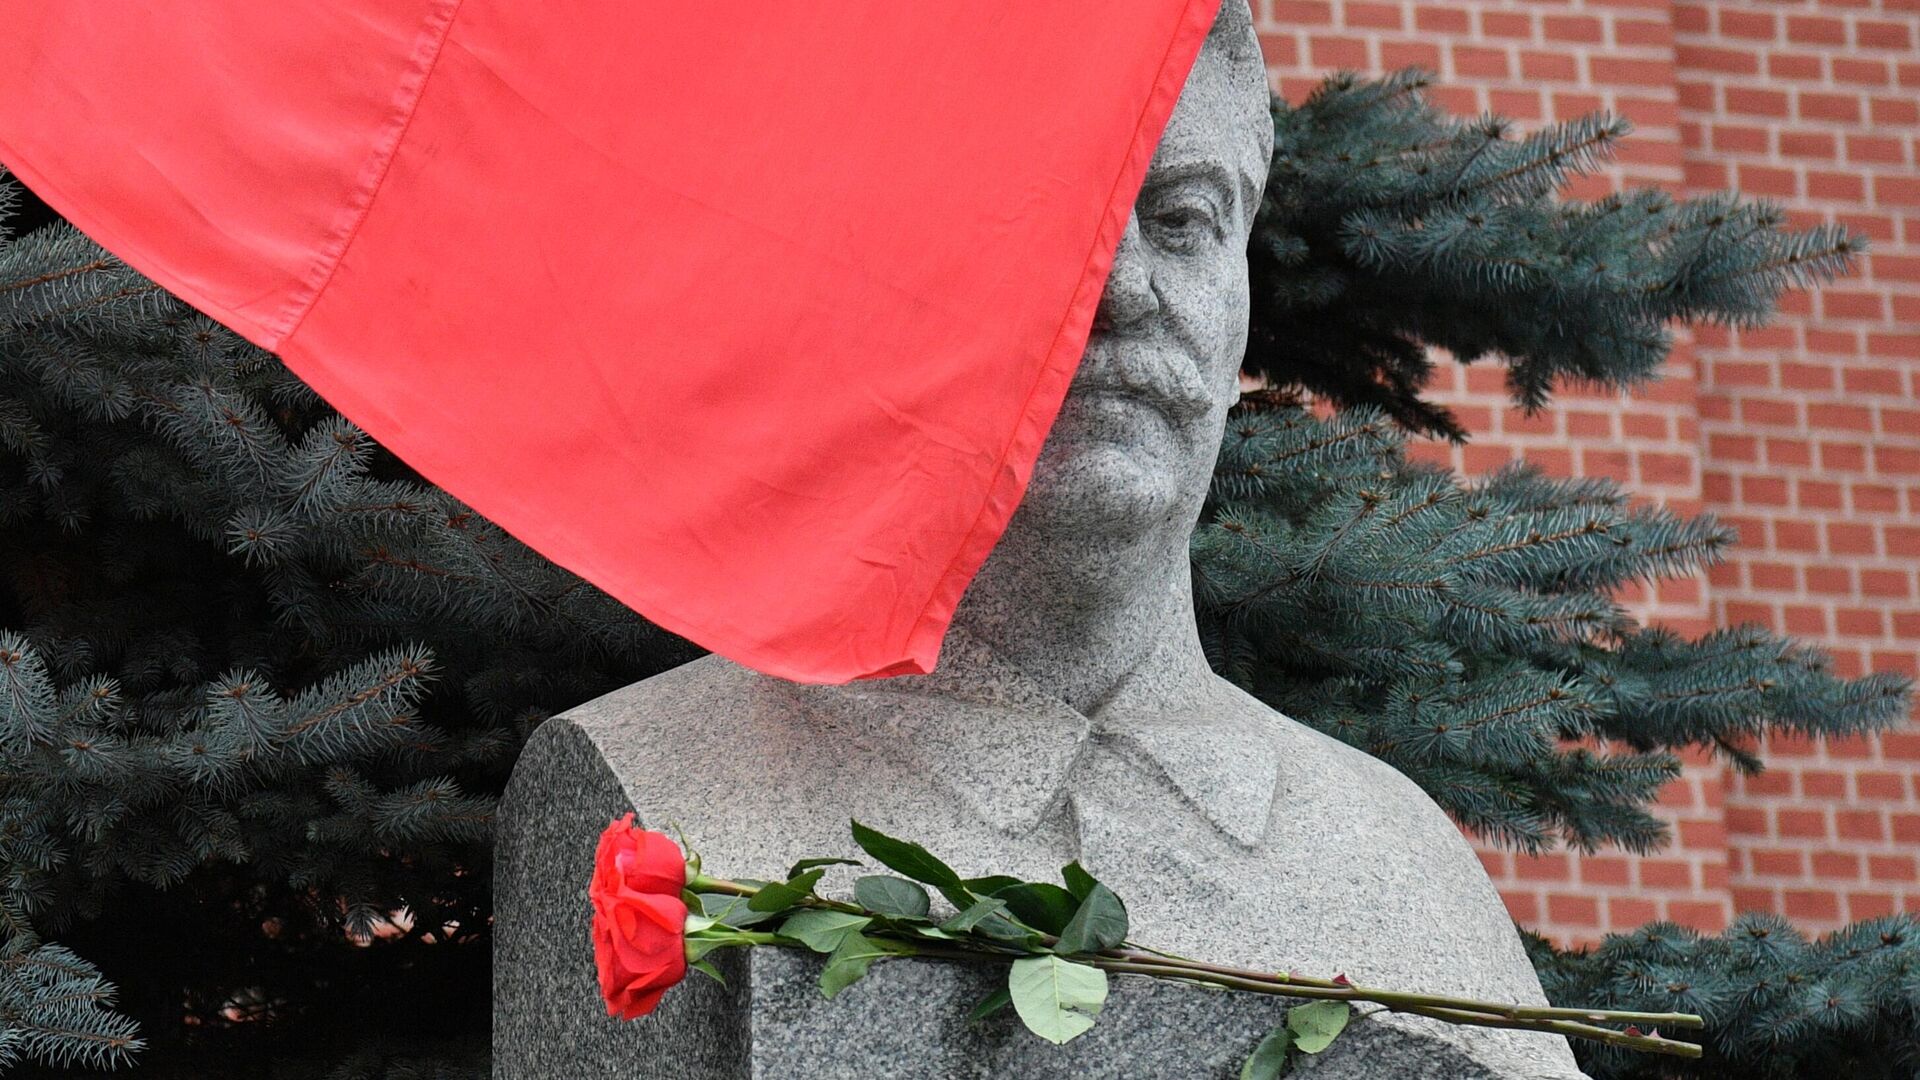 Бюст Иосифа Сталина у его мемориального захоронения у Кремлевской стены